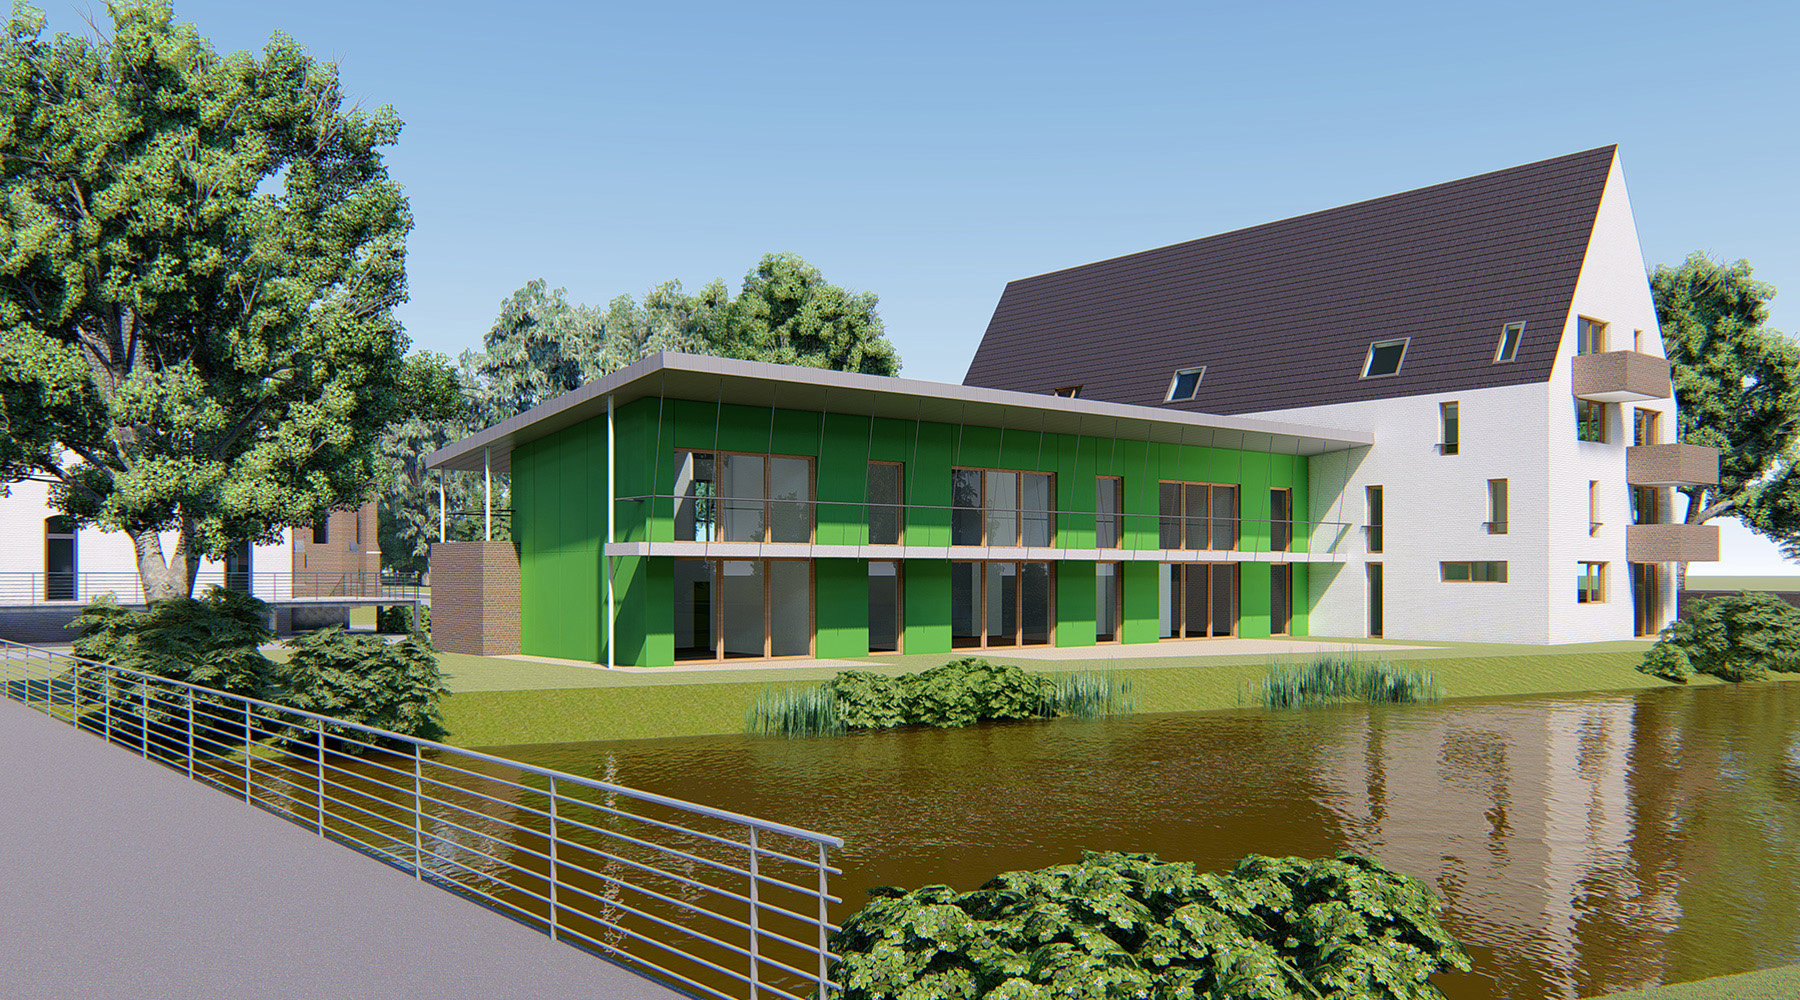 Altenpflegeheim in Aachen, grenzt an das Wasser. 3D-CAD-Modell. Grünes Gebäude, große Fenster mit braunem Rahmen, Flachdach. Angrenzendes Gebäude weiß mit Spitzdach und Balkonen.